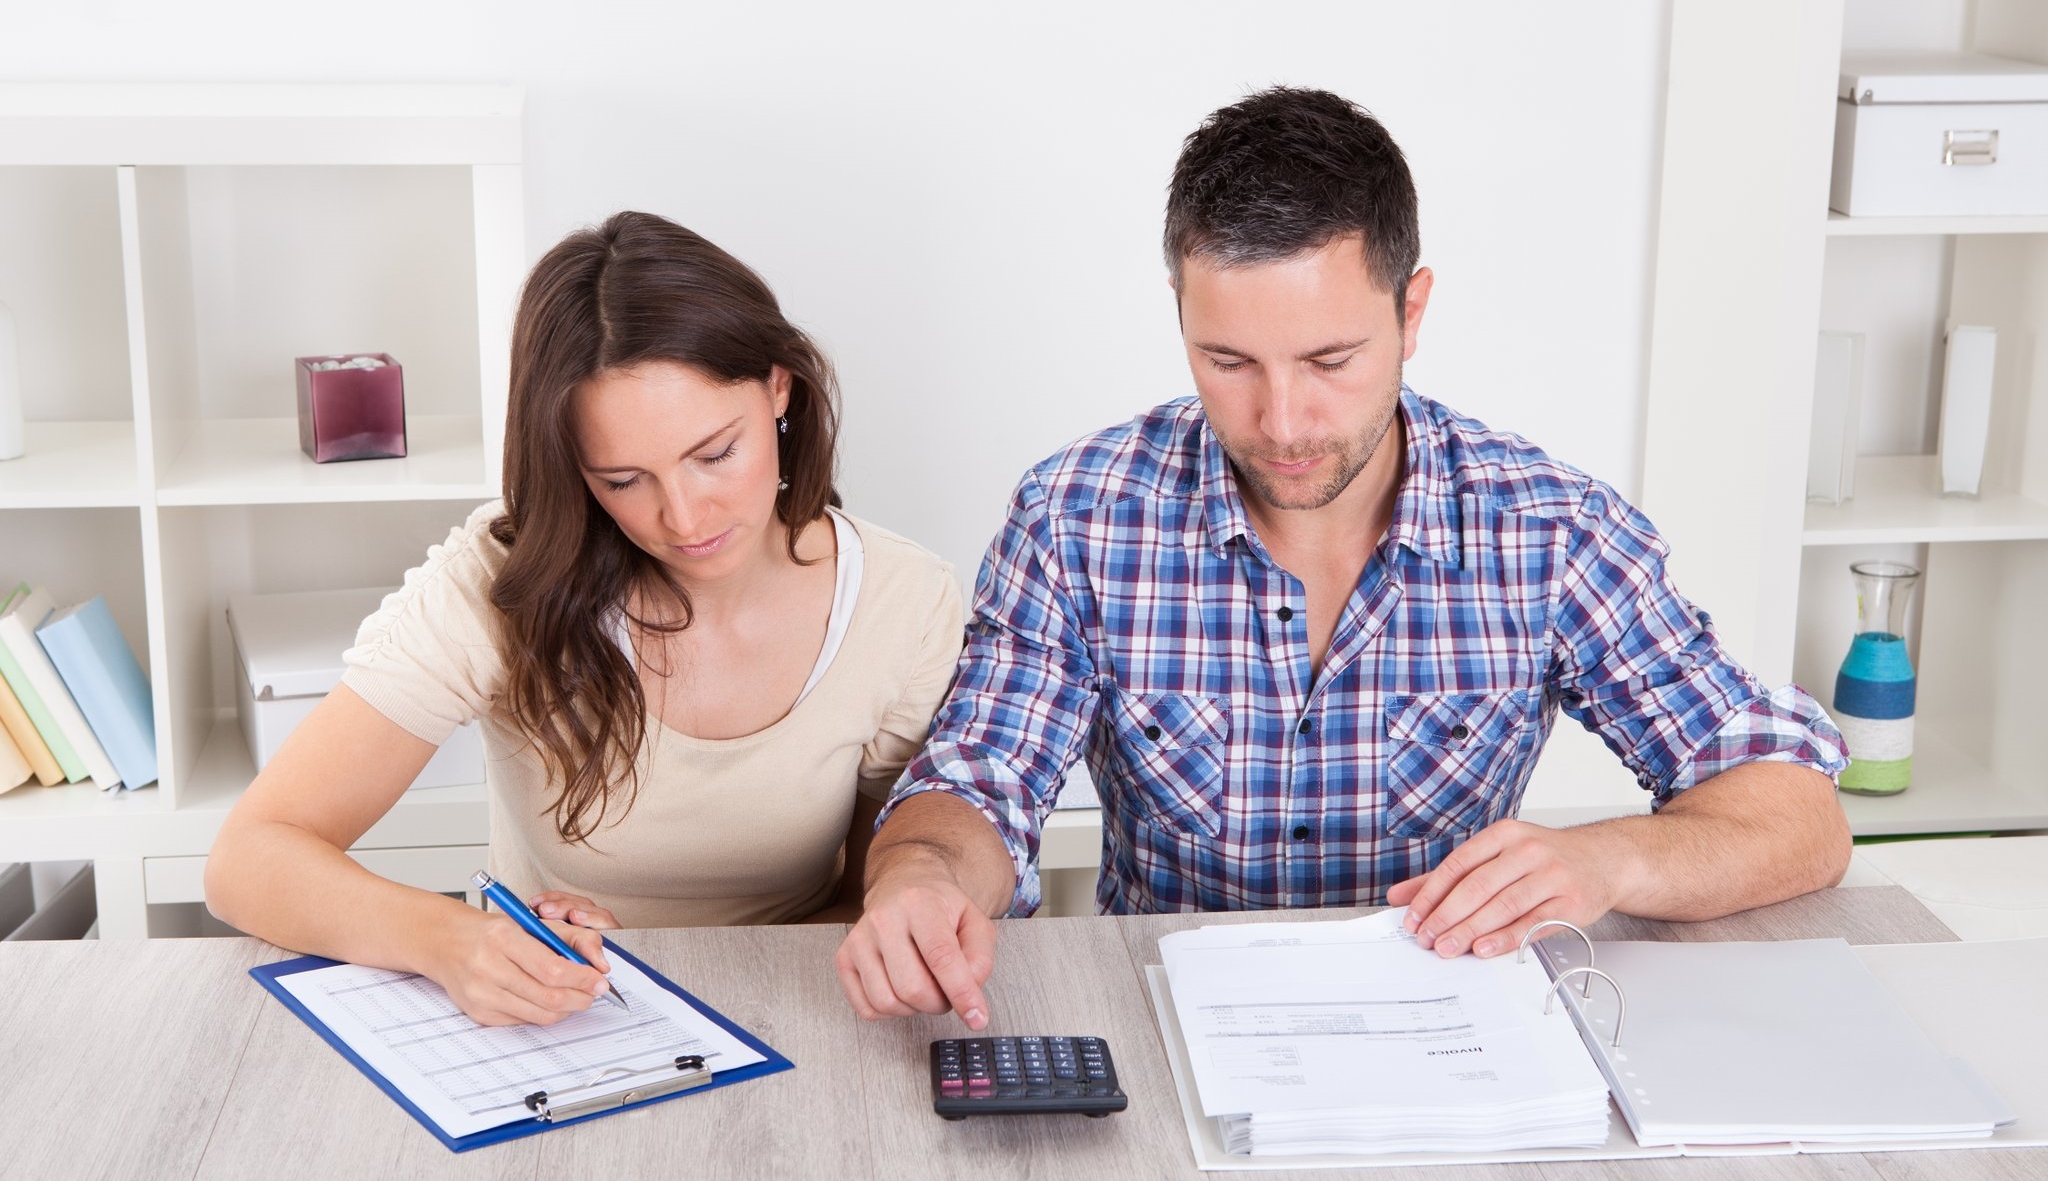 Если вторая ипотека в семье - обоснованная необходимость, нужно искать способы получить заветный кредит.